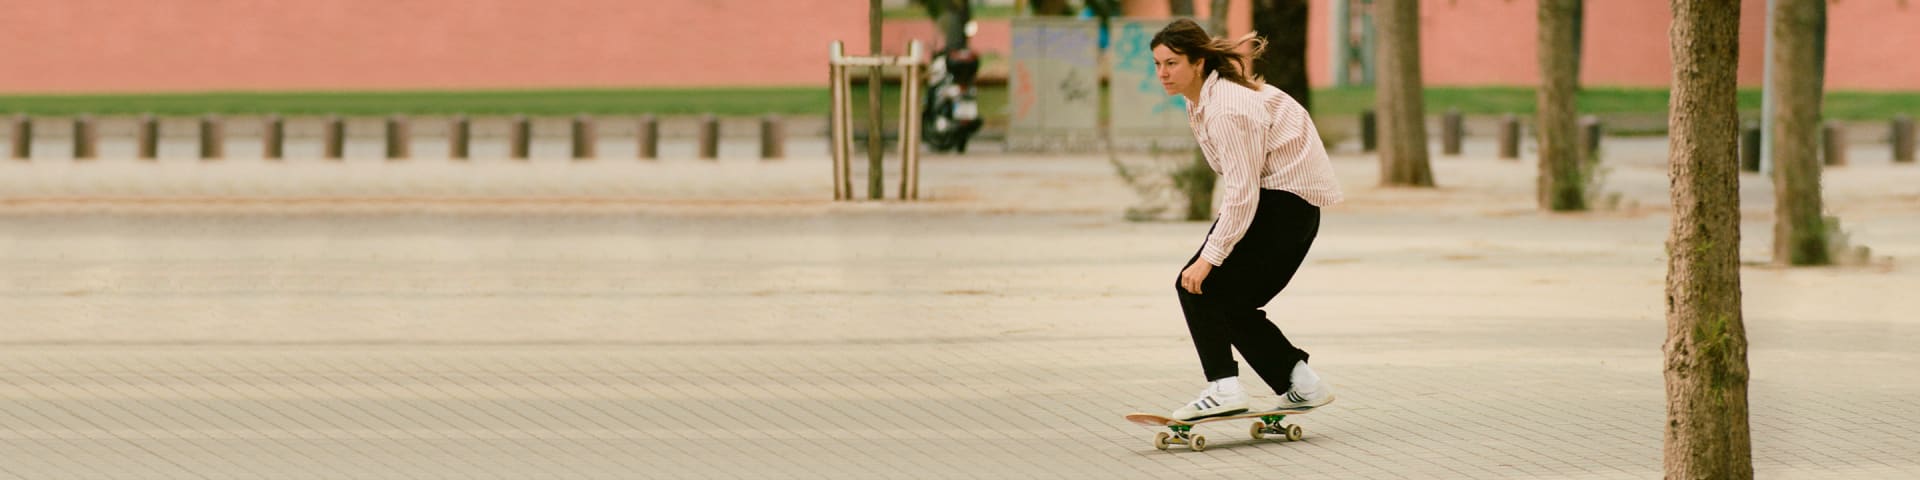 sed exposición Corea adidas Women's Skateboarding